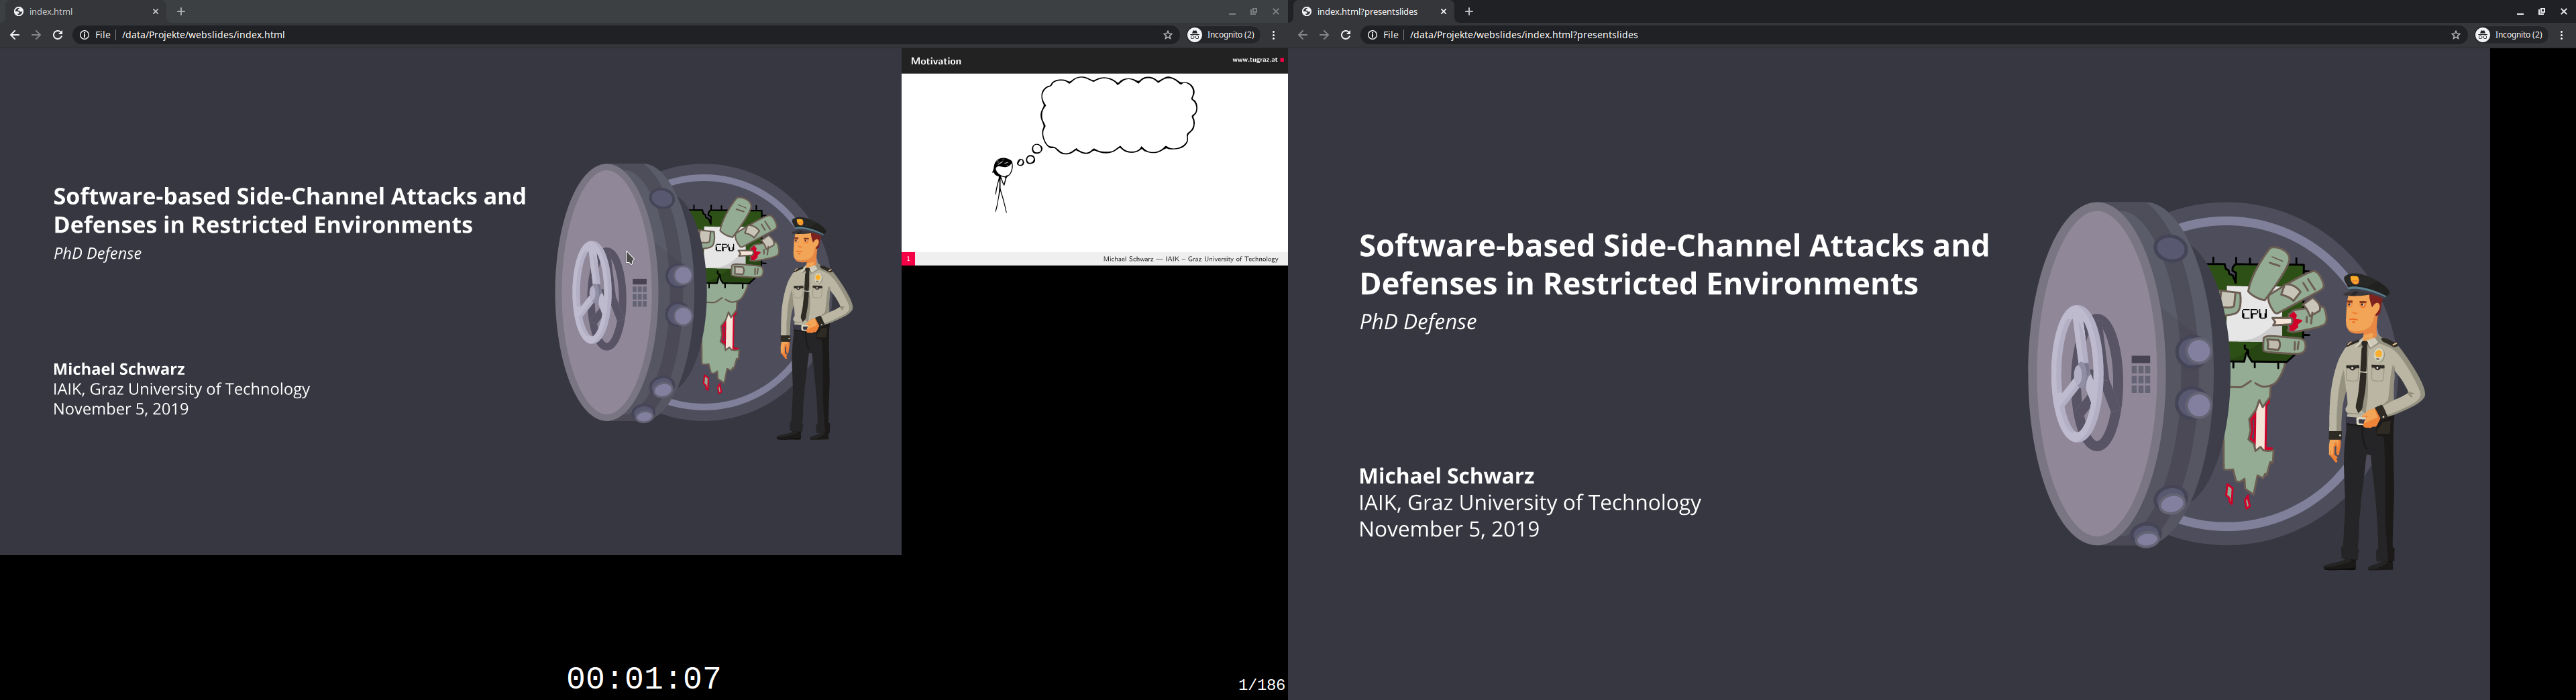 PDF Web Slides in presentation mode